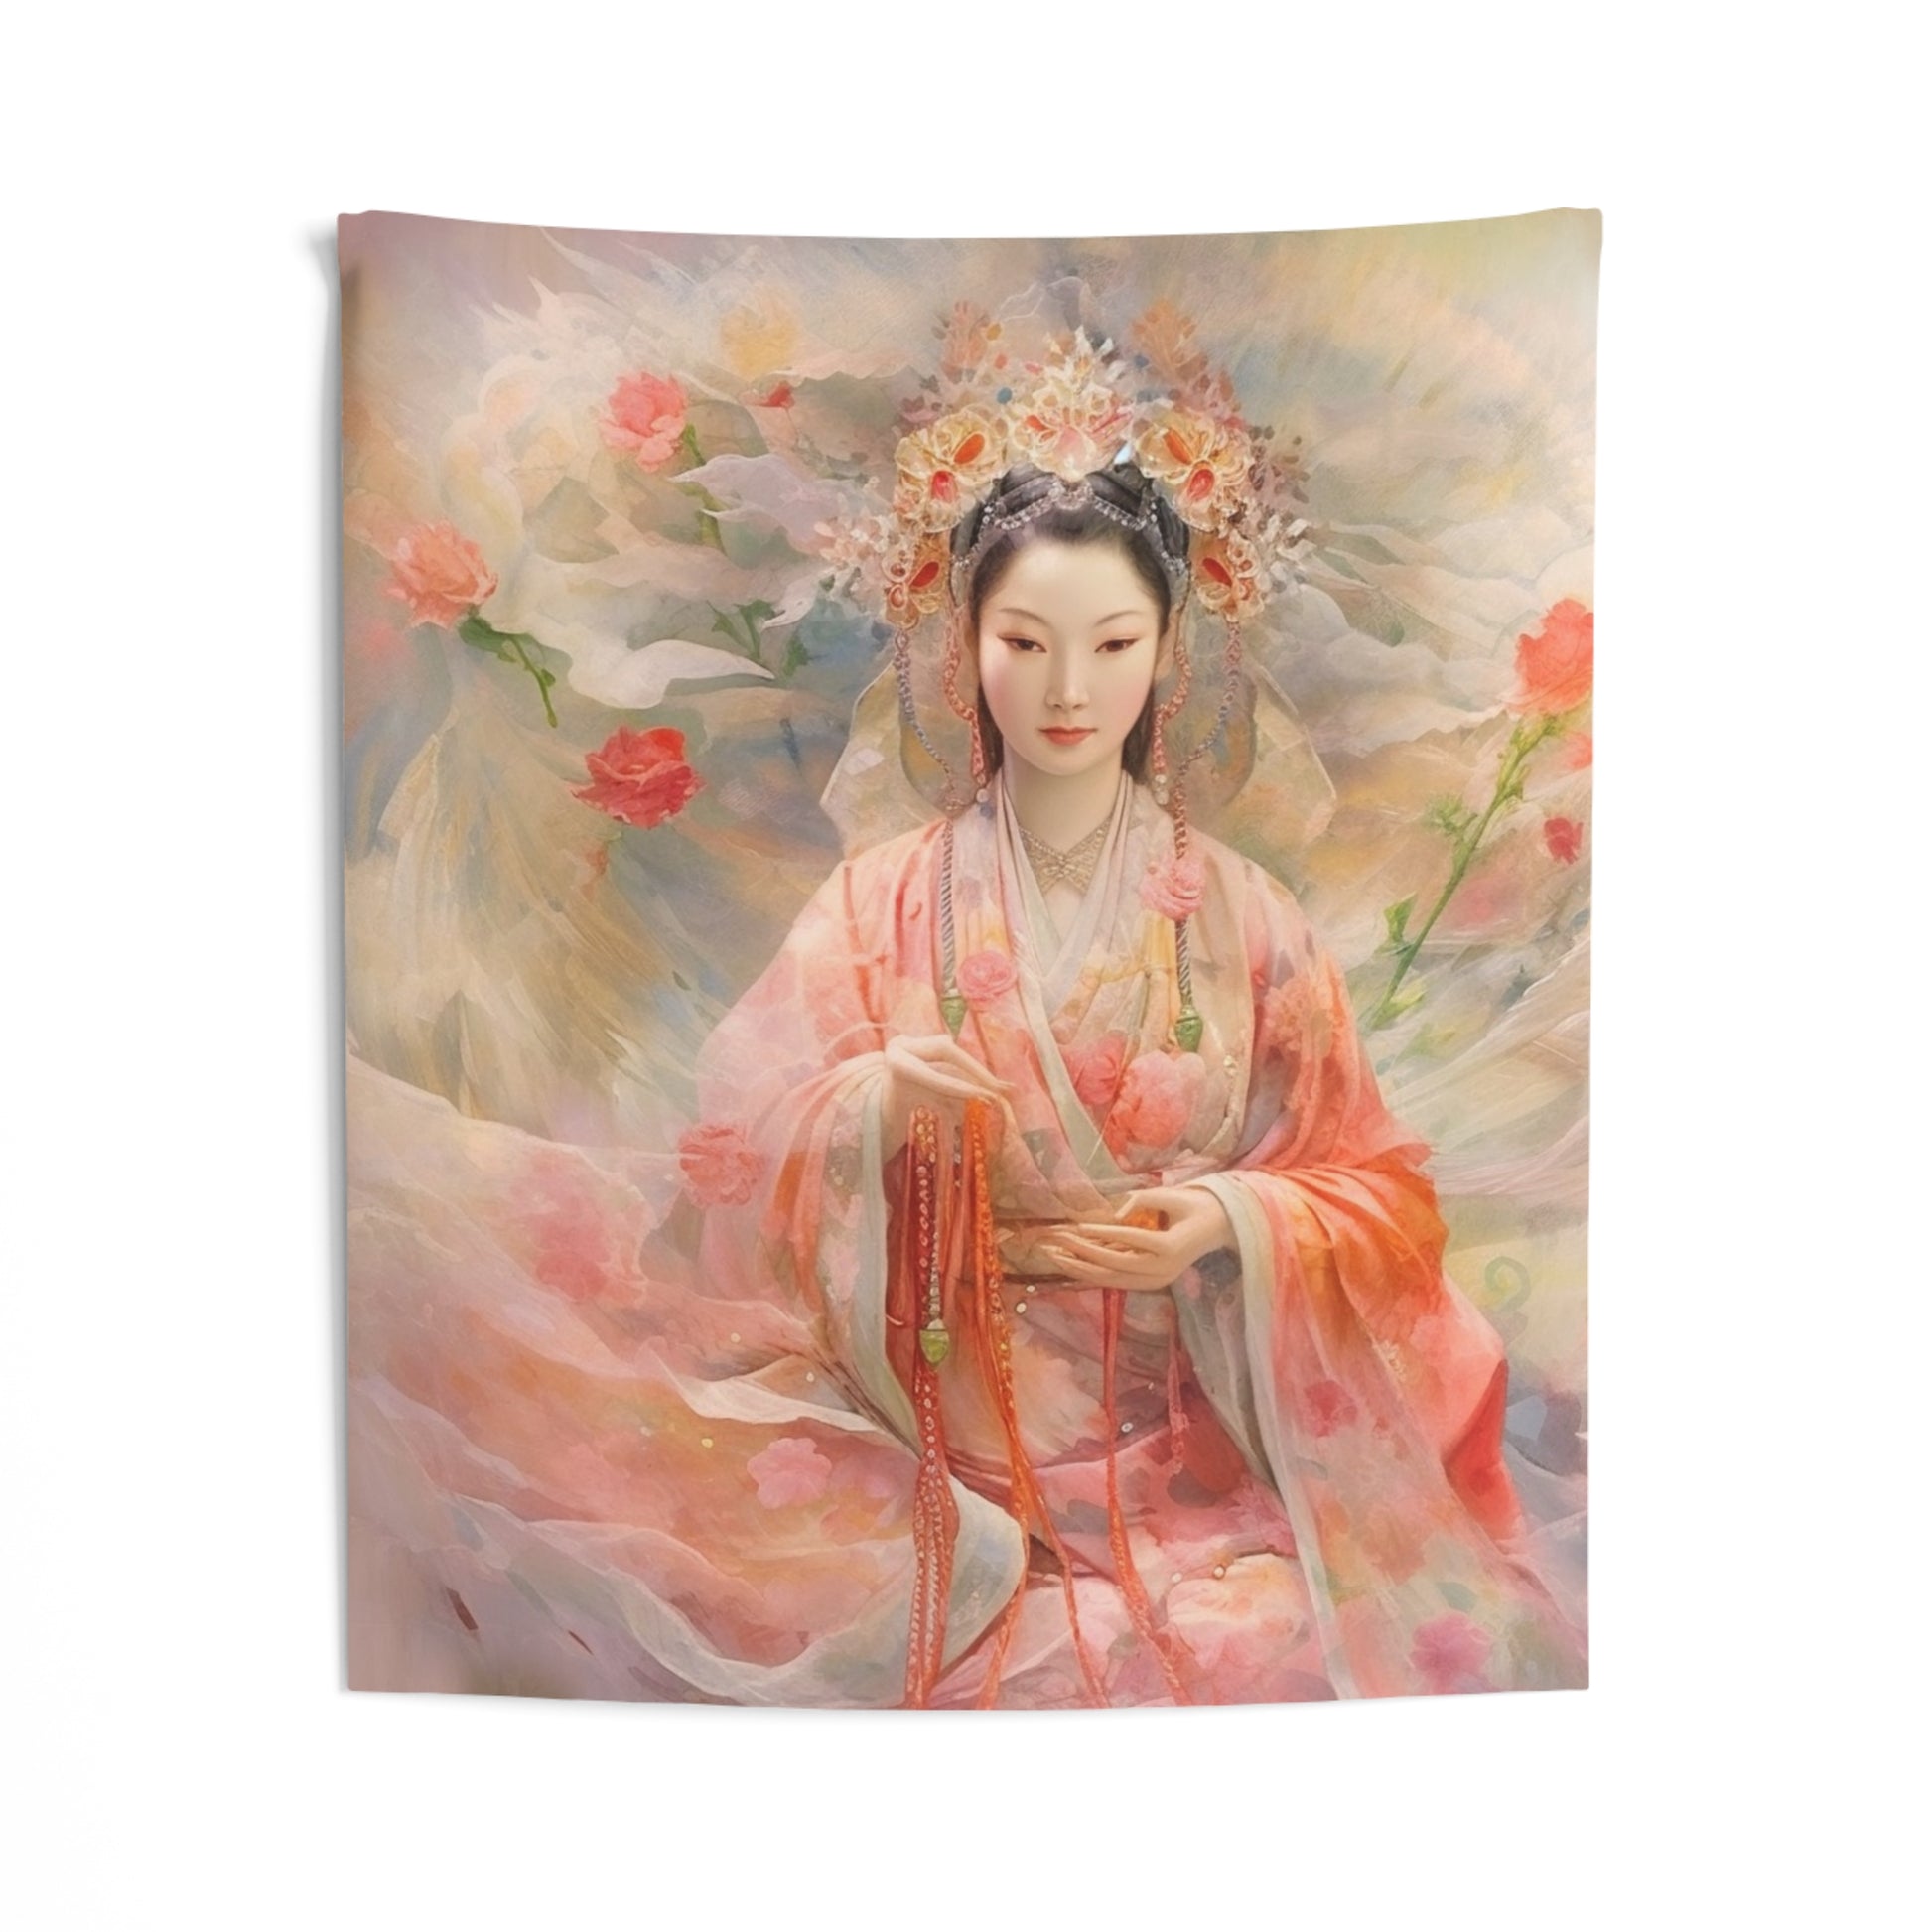 Quan Yin Wall Tapestry - Guan Yin, Kwan Yin, Goddess of Compassion - Spiritual Wall Decor for Buddhism Home Decor 50" × 60"  